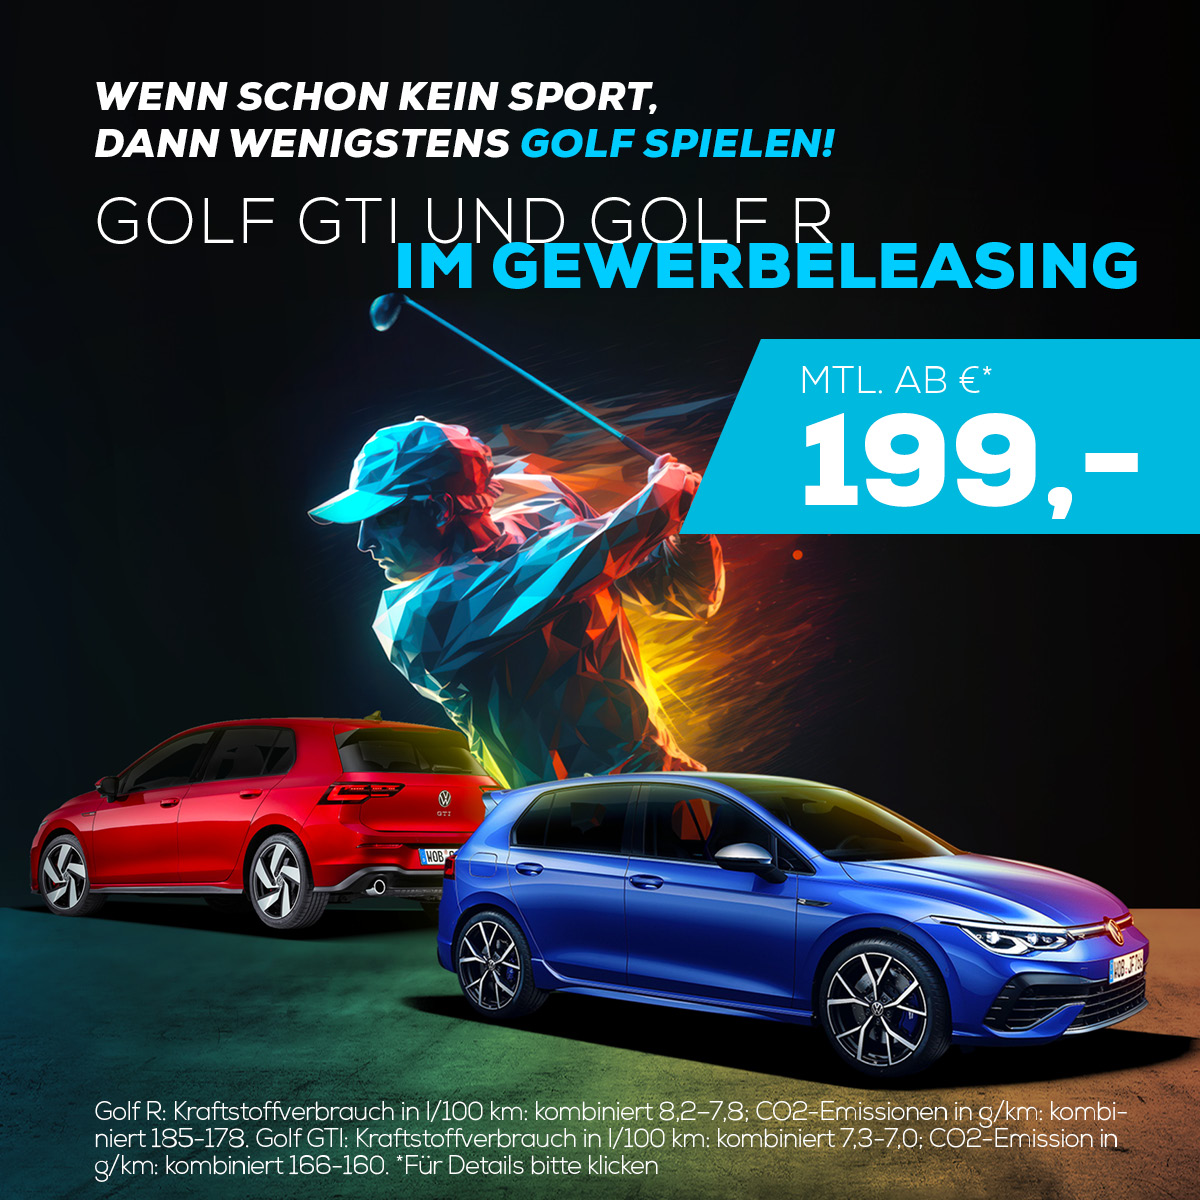 Sichern Sie sich jetzt exklusive Gewerbeleasing-Angebote für den Golf GTI und den Golf R im Autohaus Bataille in Jülich!